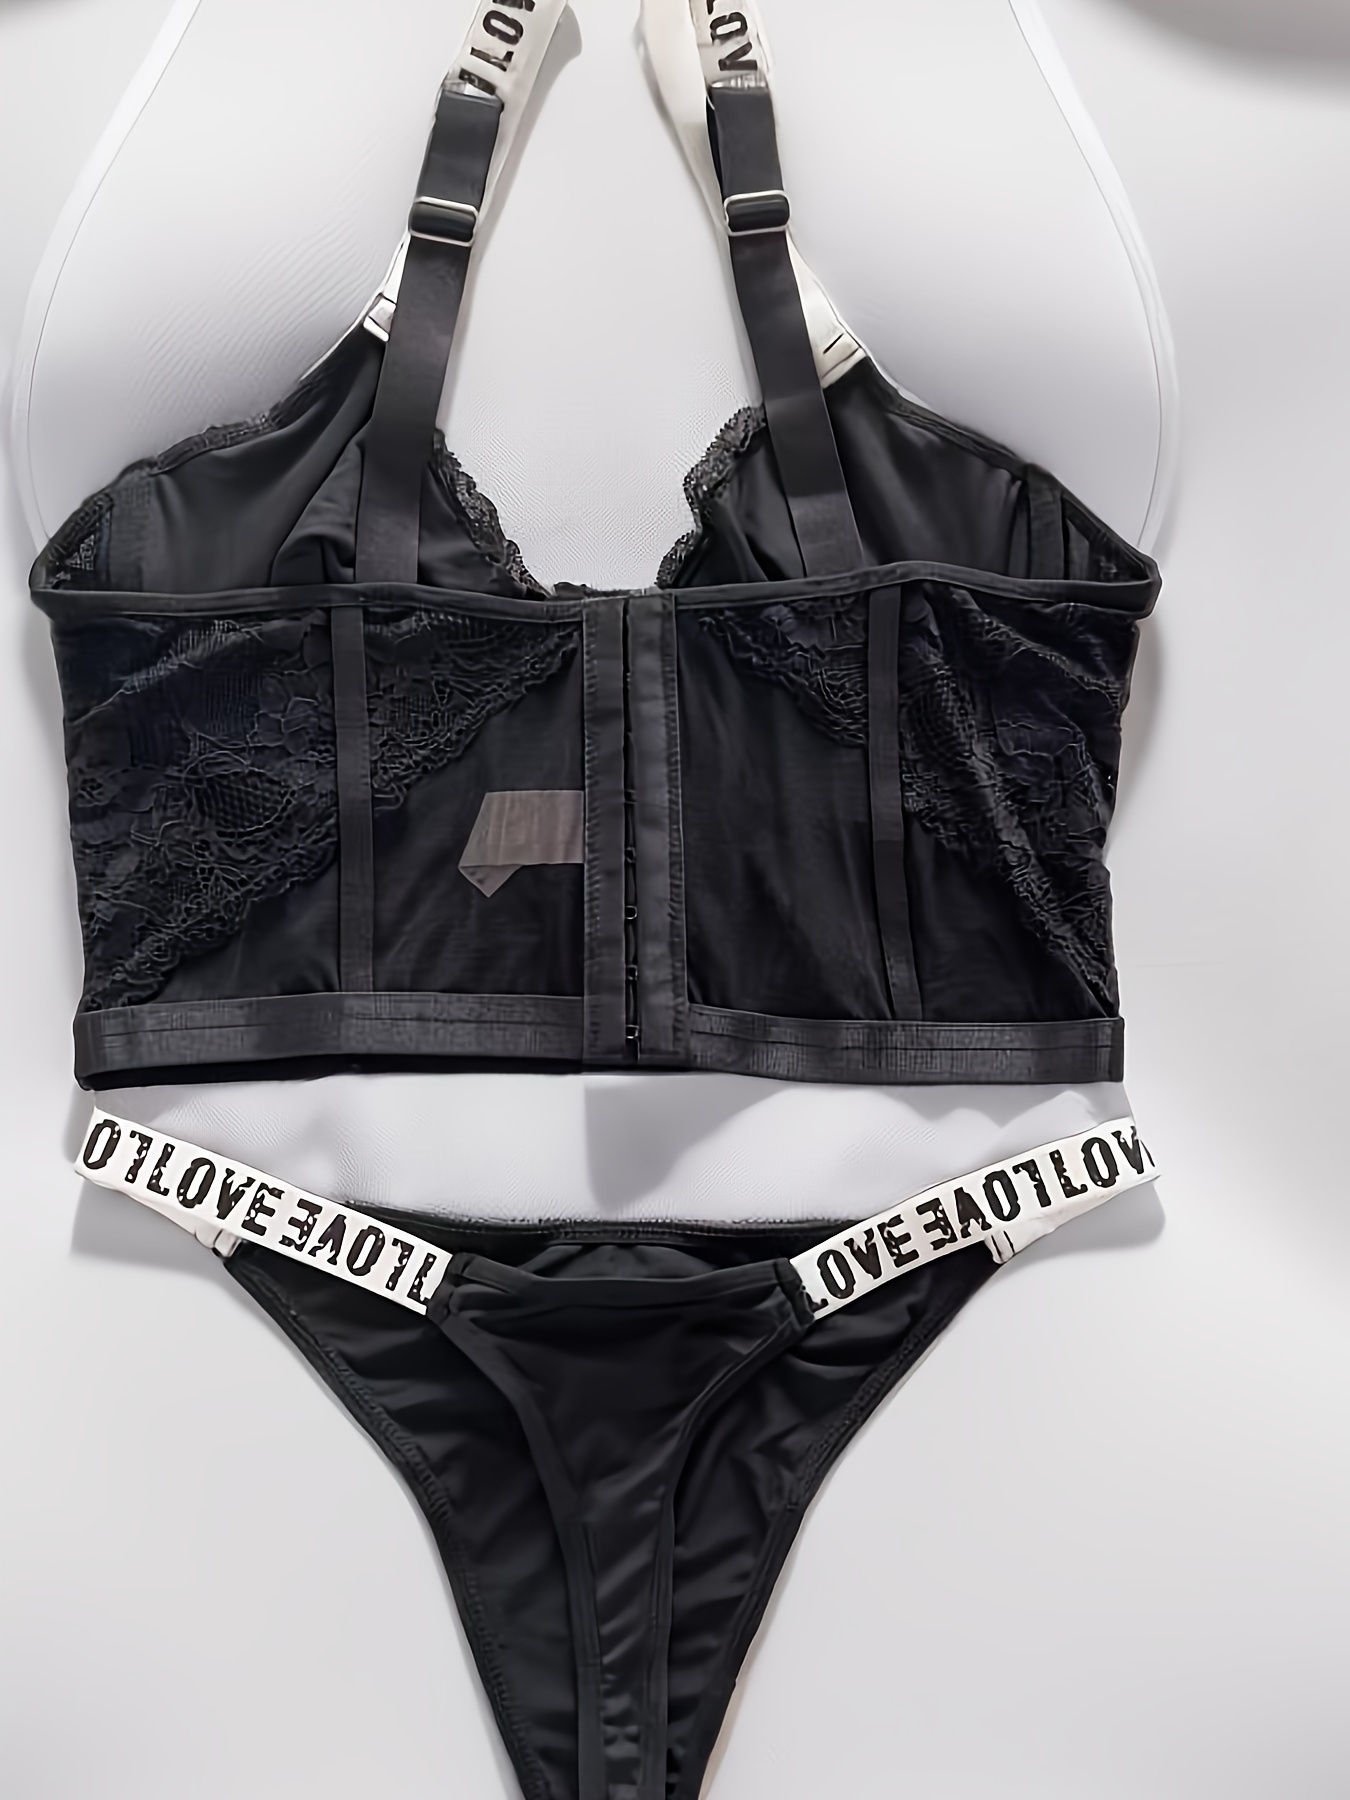 Contrast Lace Lingerie Set, Letter Straps Push Up Bra & Thong Panties,  Women's Sexy Lingerie & Underwear